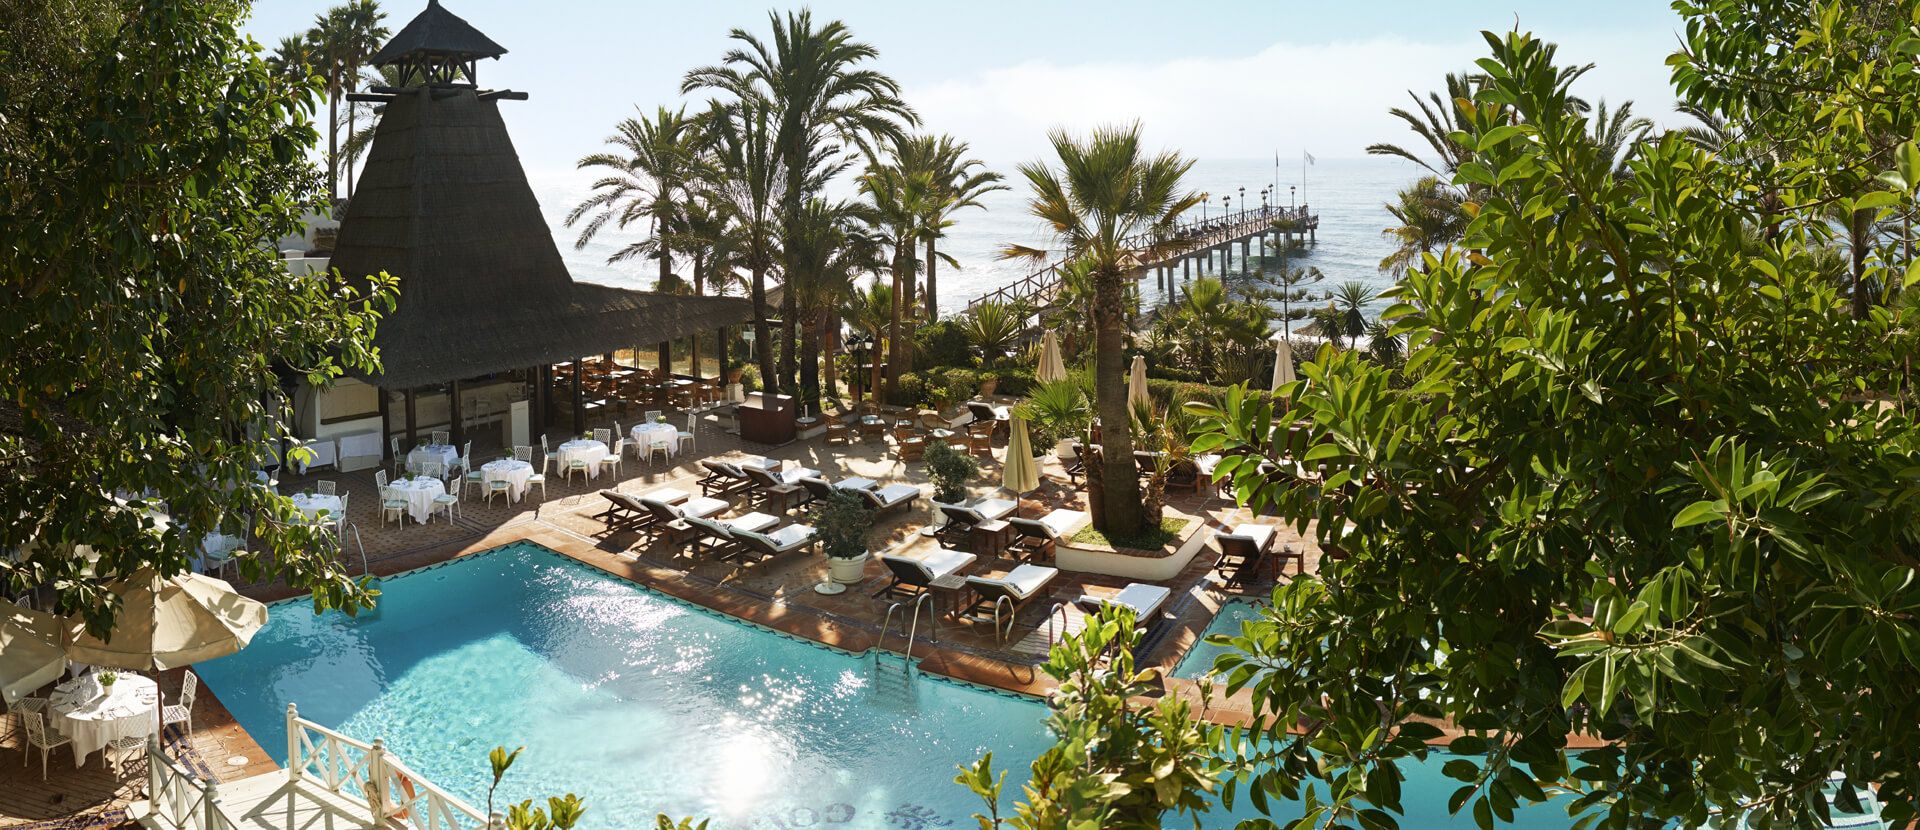  Marbella Club, Golf Resort & Spa